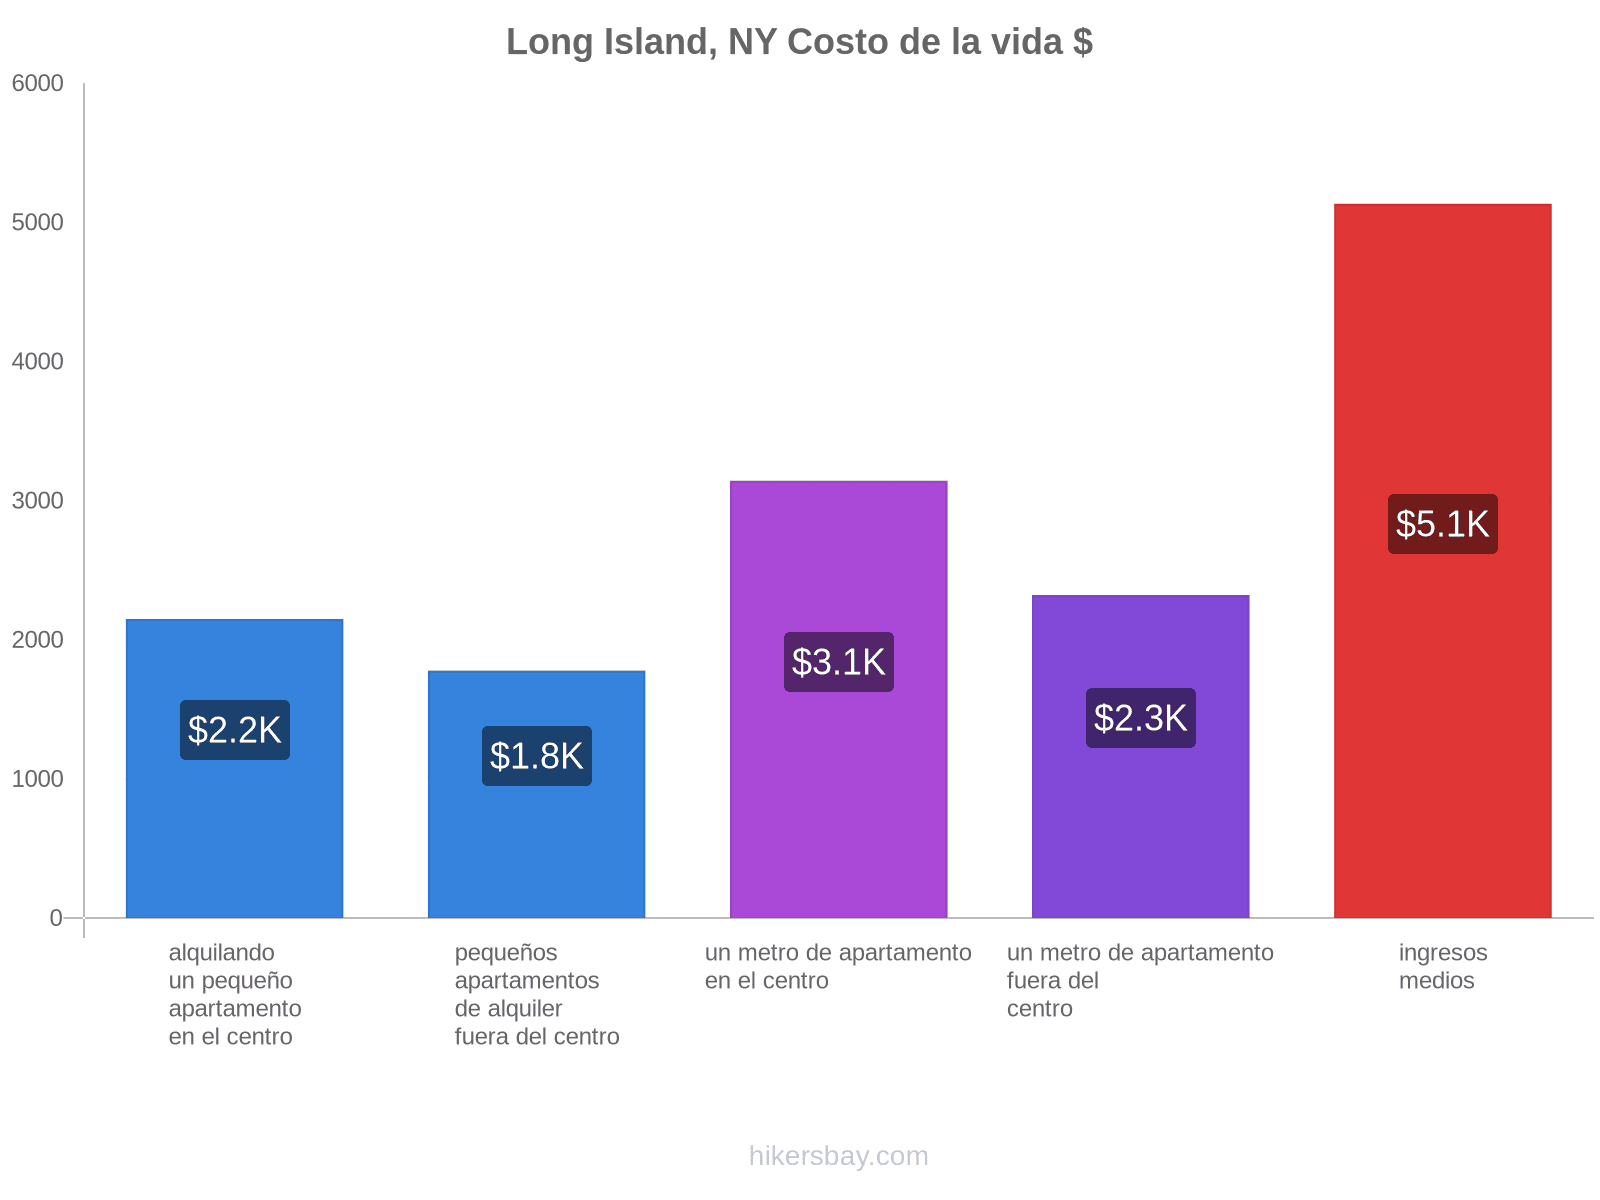 Long Island, NY costo de la vida hikersbay.com